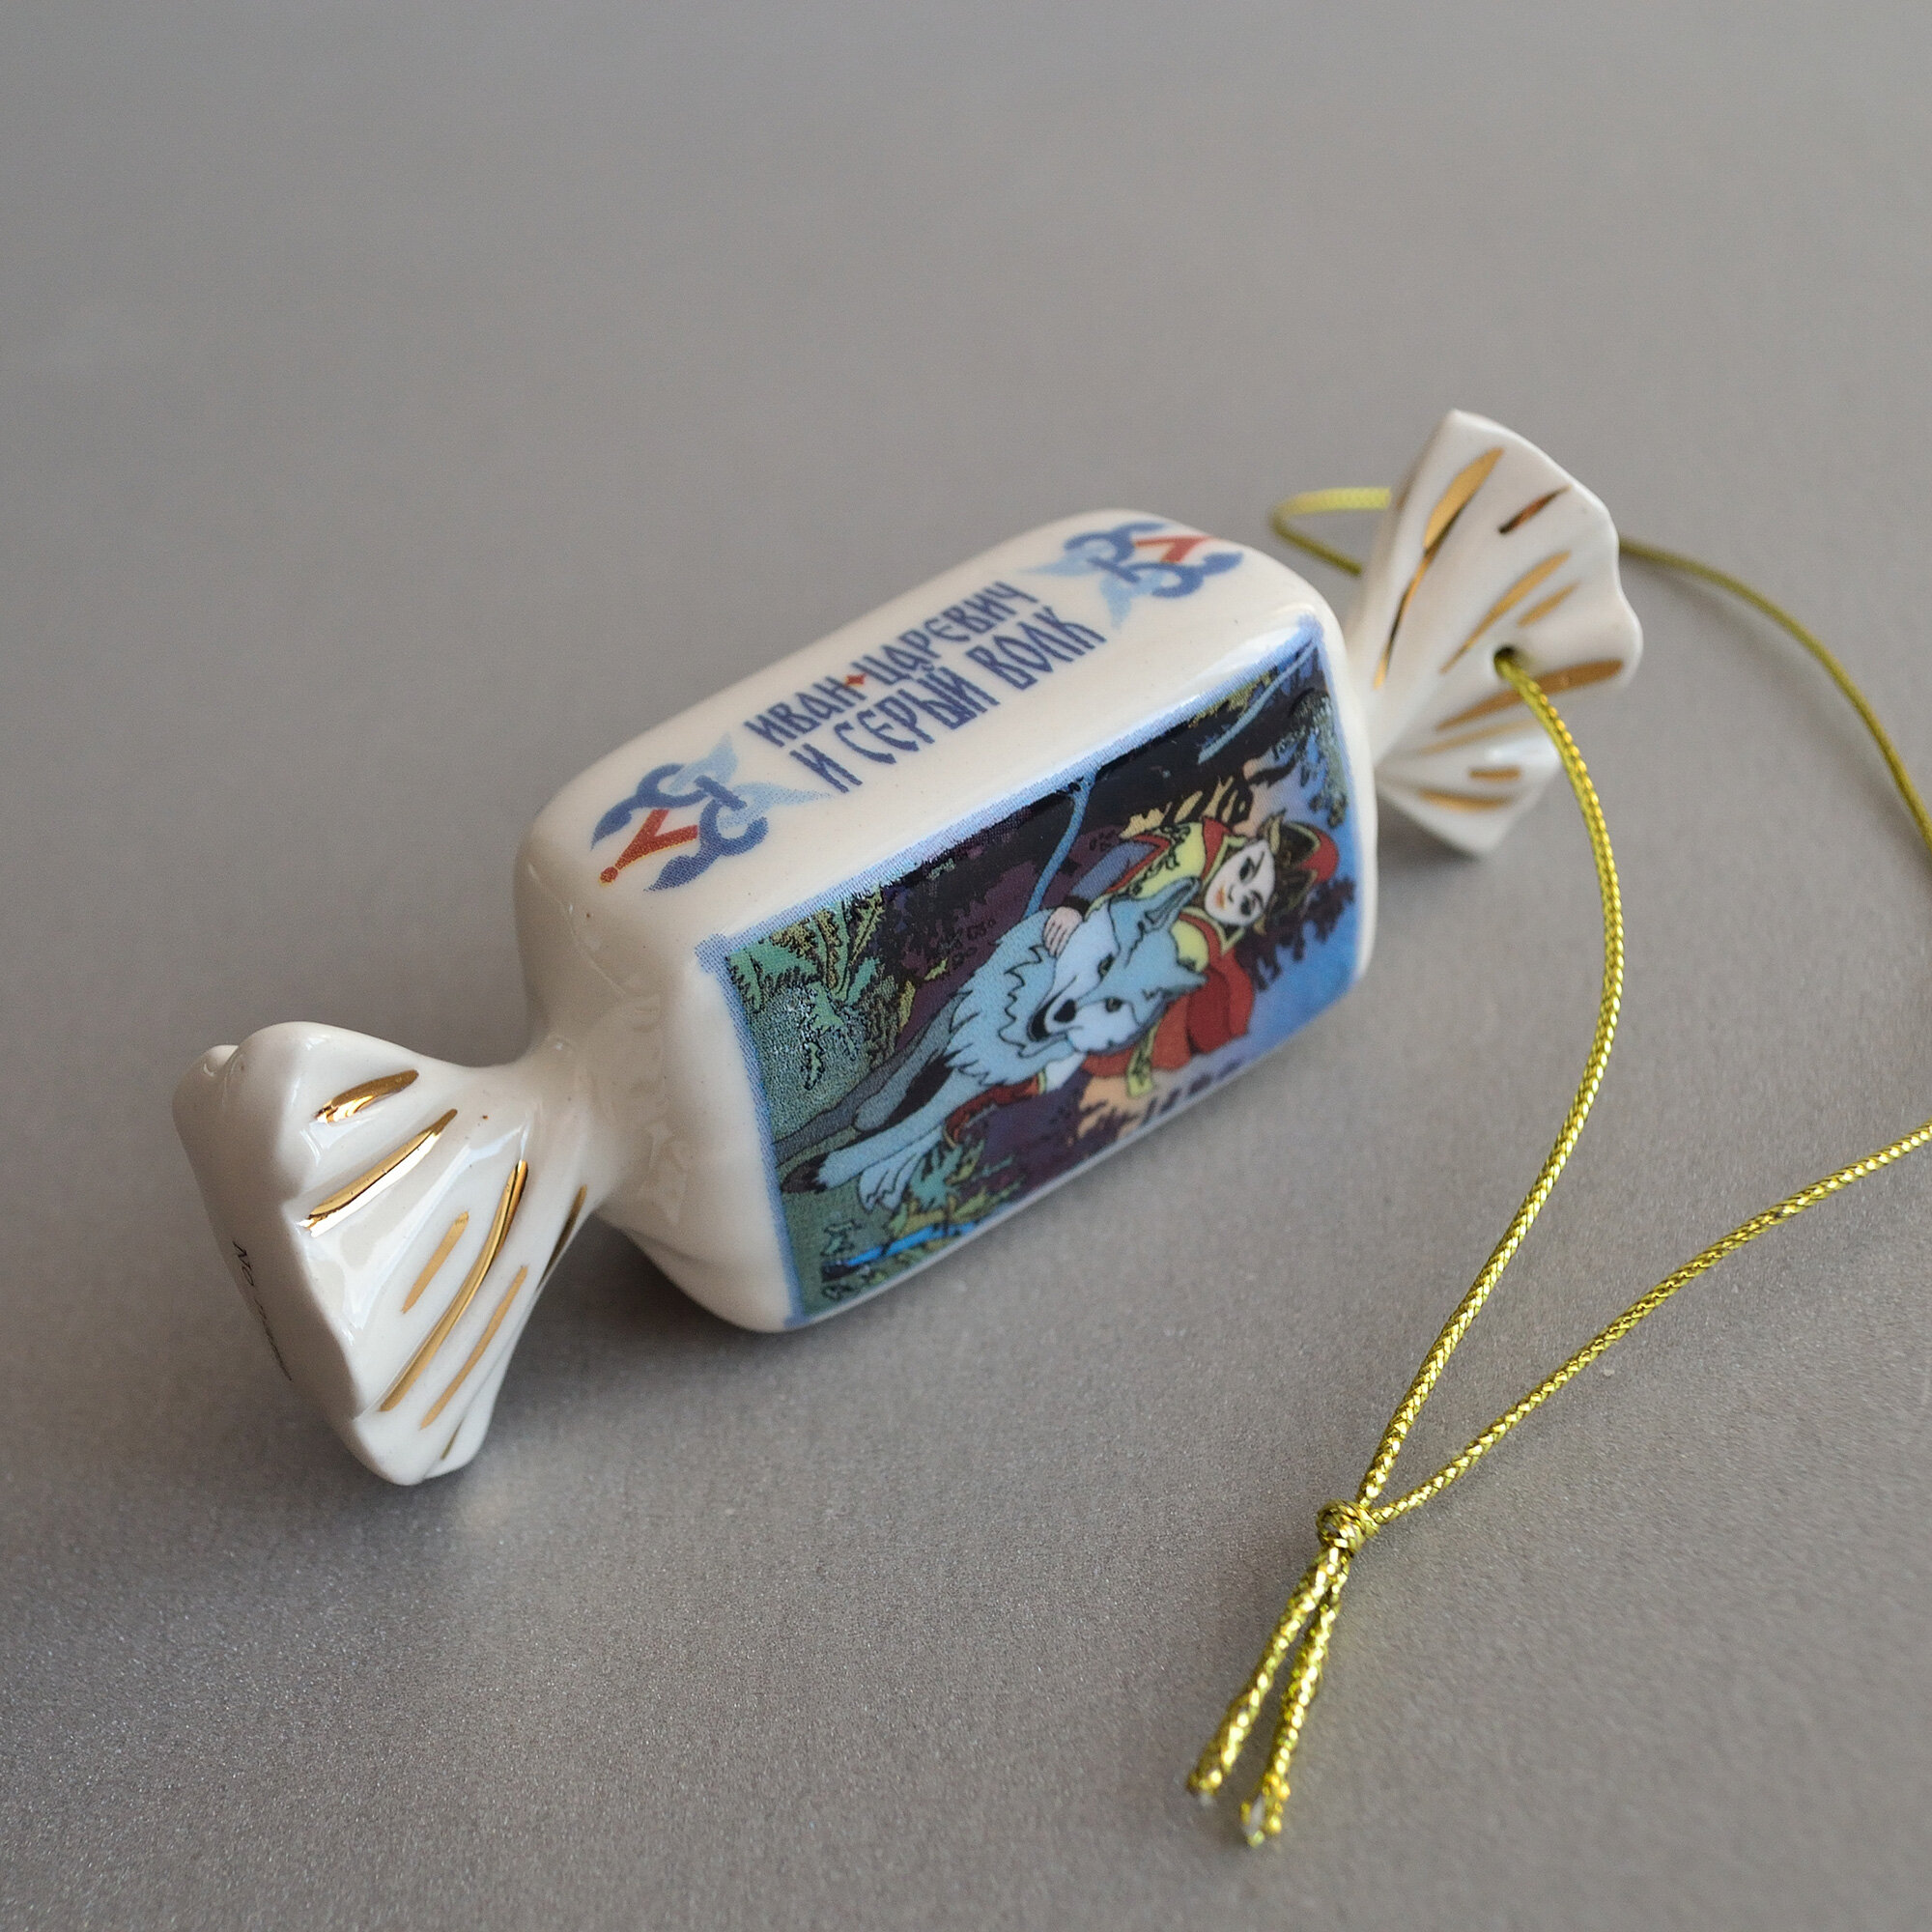 Елочная игрушка из фарфора конфета Царевна-Лягушка